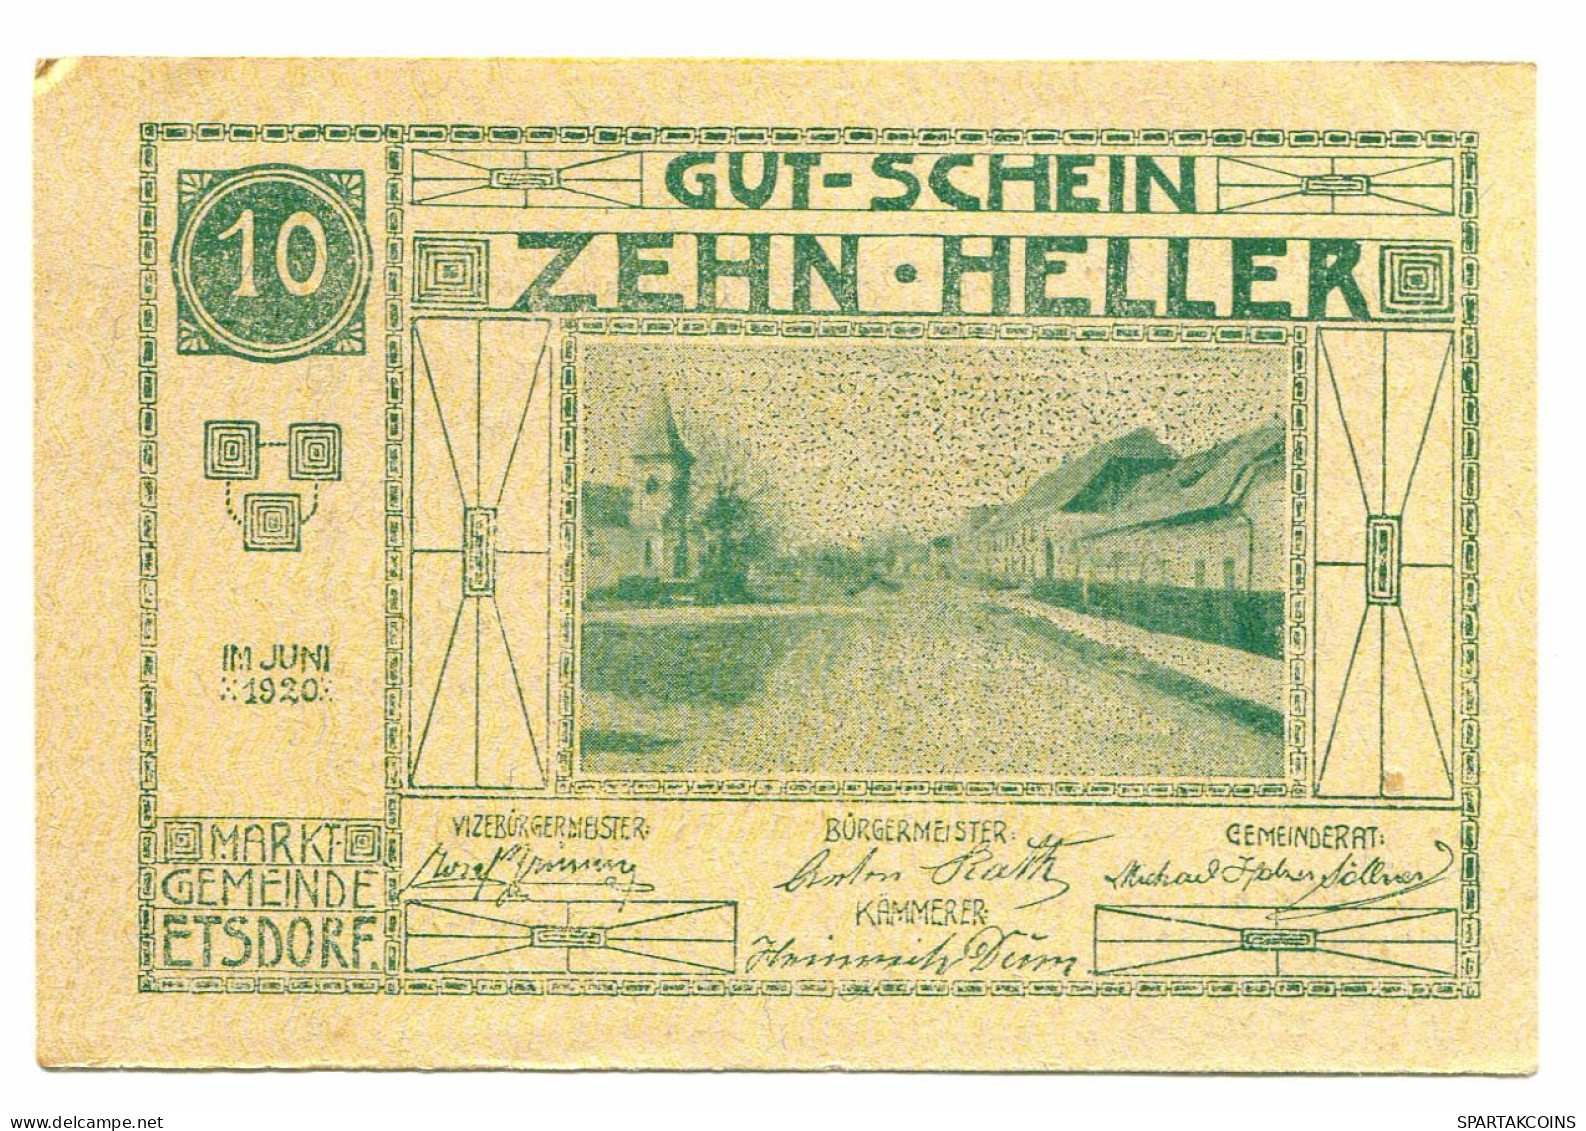 10 Heller 1920 ETSDORF AM KAMP Österreich UNC Notgeld Papiergeld Banknote #P10340 - [11] Local Banknote Issues